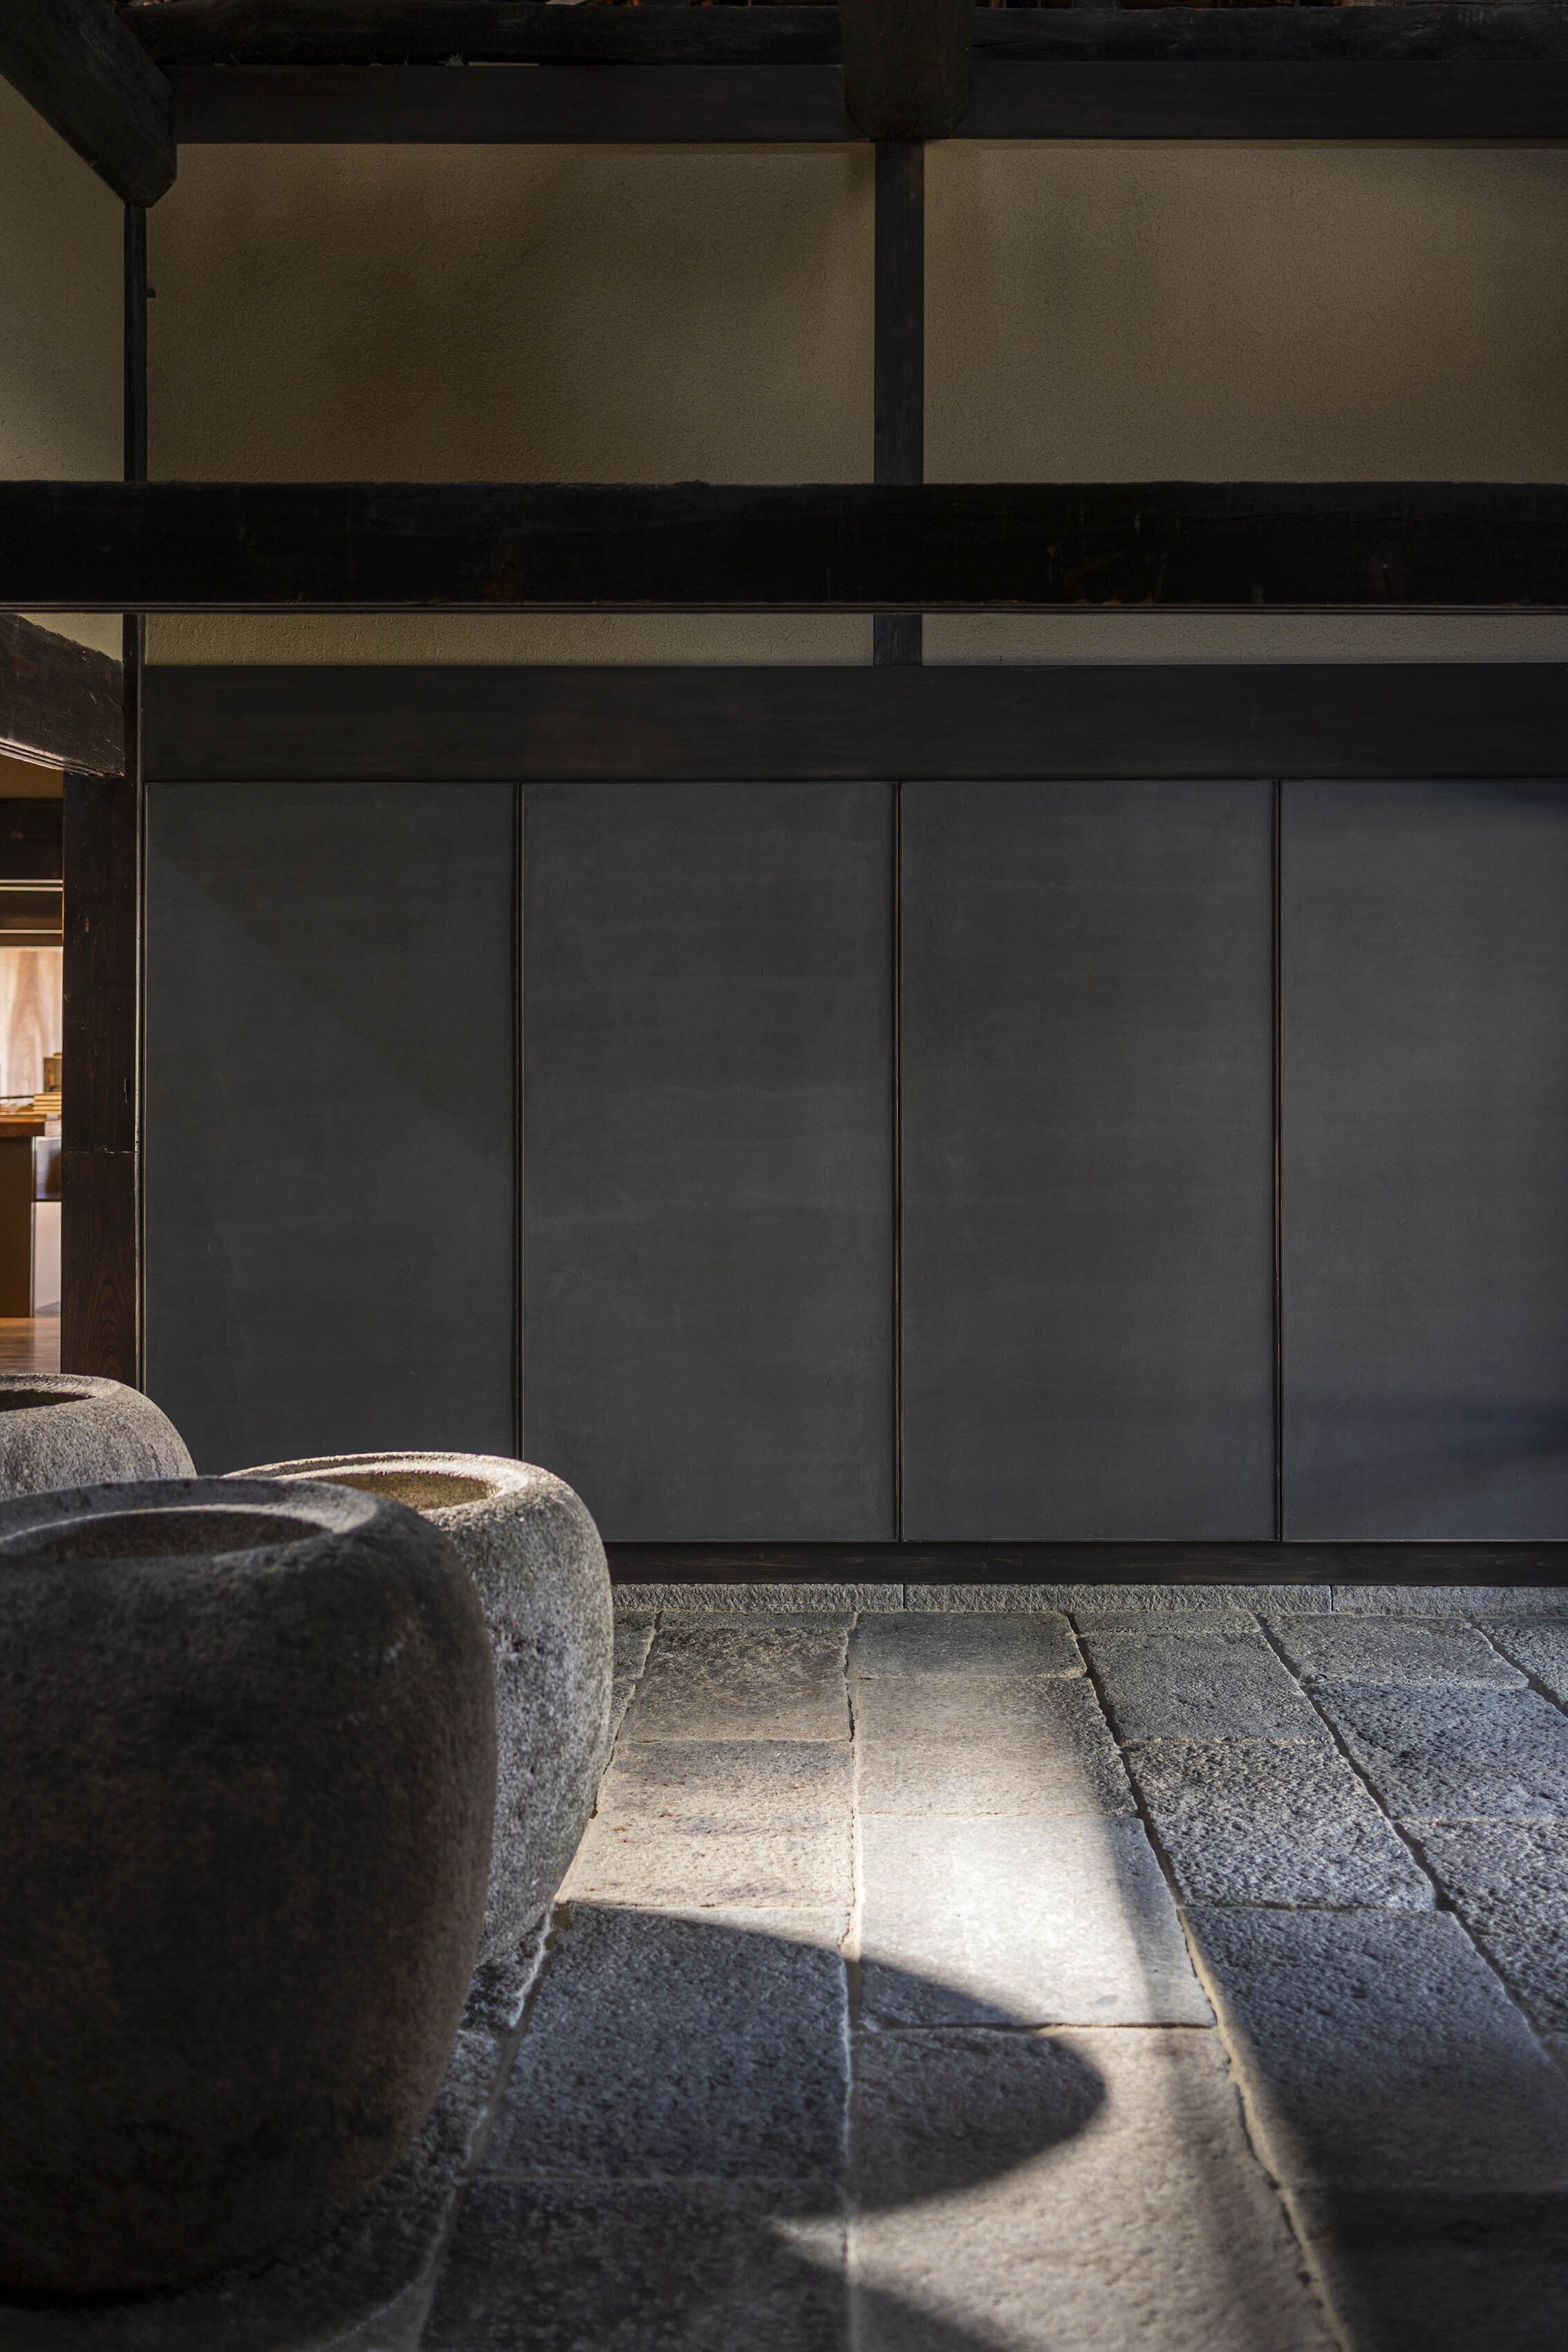  杉本博司と榊田倫之が率いる新素材研究所がデザインを手掛けた小田垣商店本店のショップ。黒漆喰は久住章監修によるもの。 